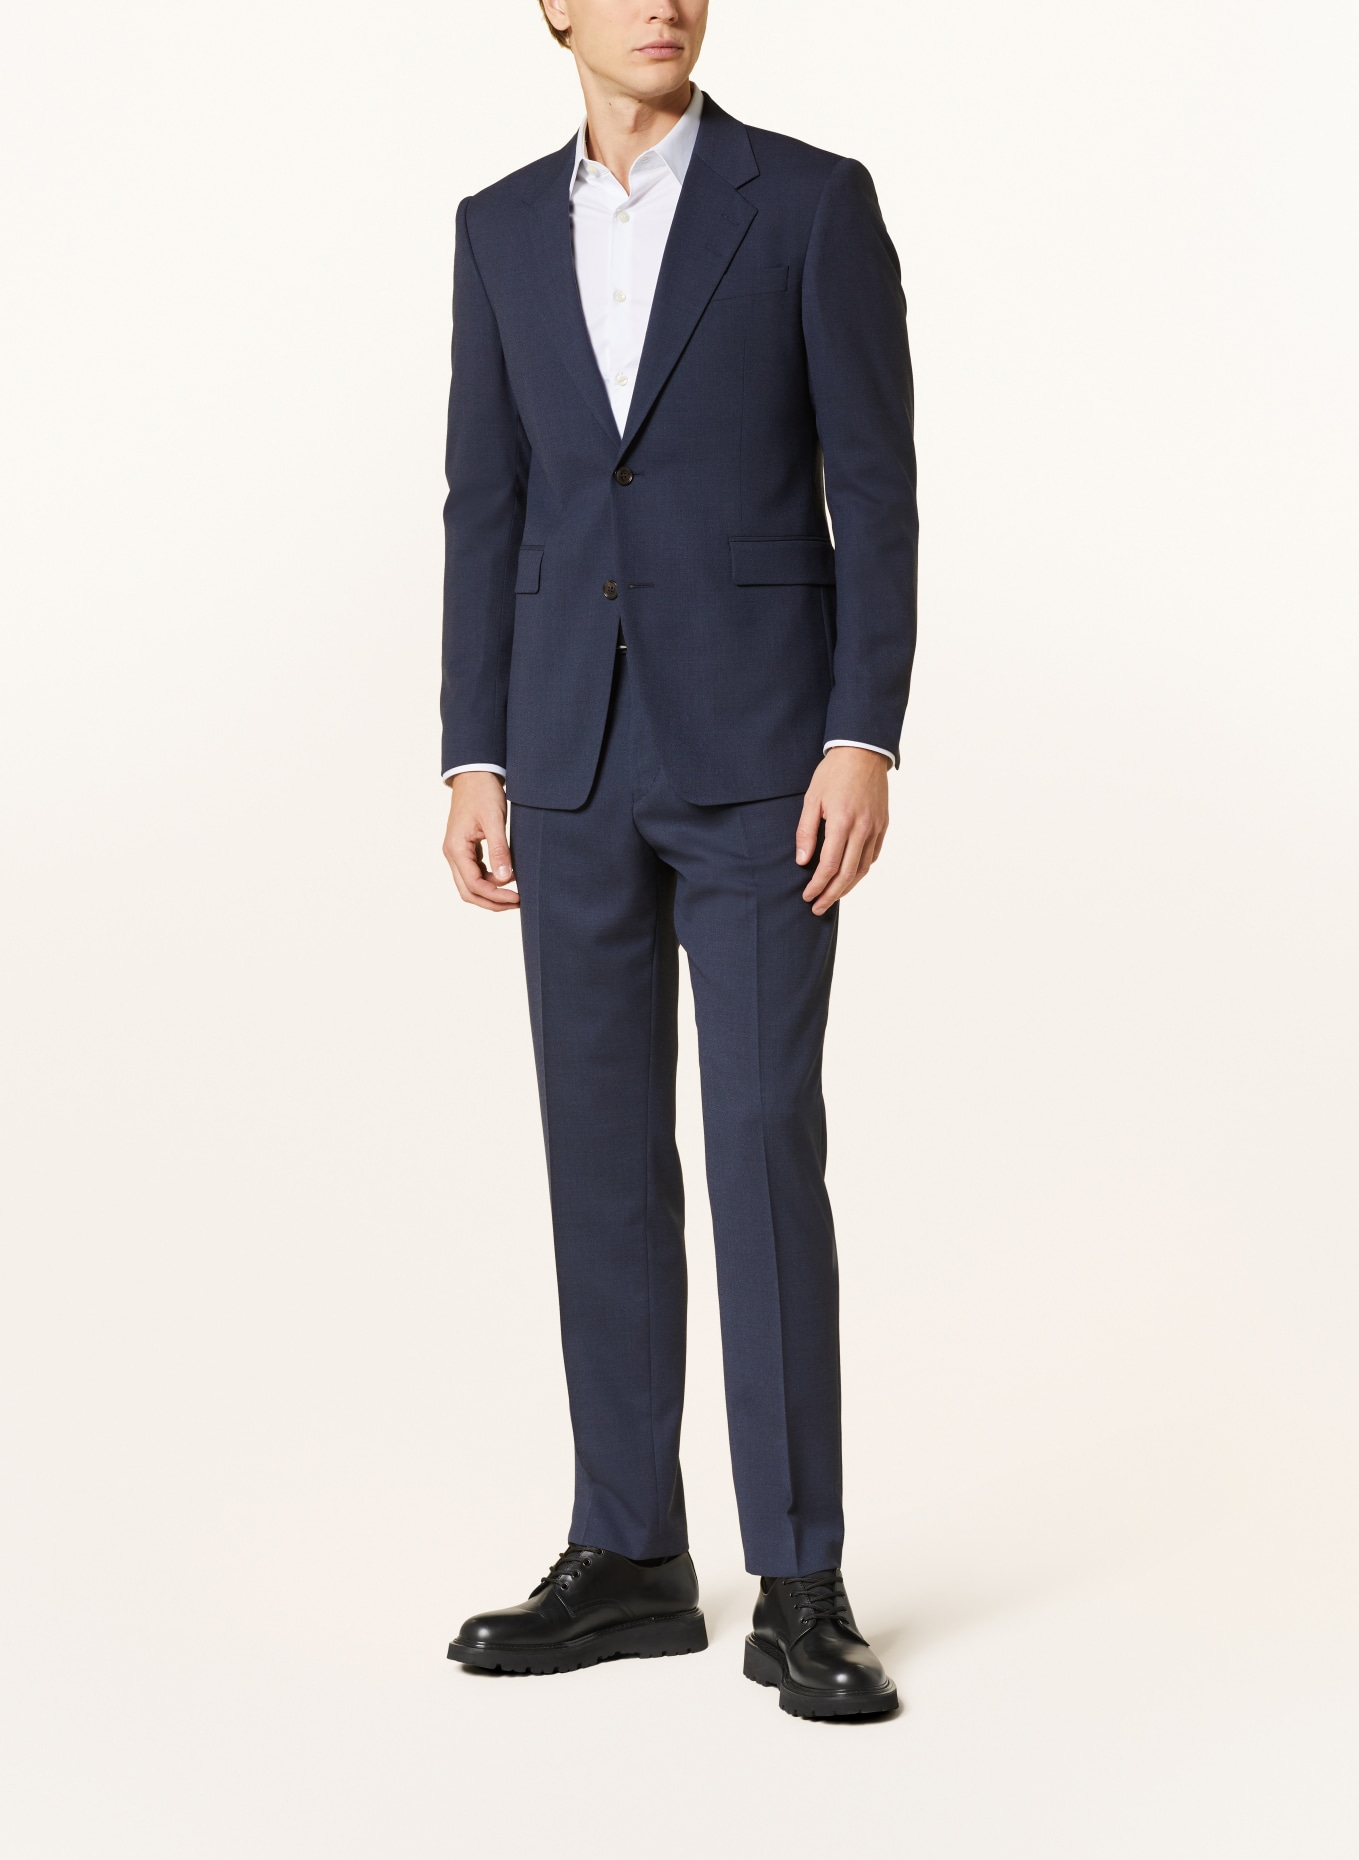 TIGER OF SWEDEN Suit jacket JULIEN regular fit, Color: 231 Dusty blue (Image 2)